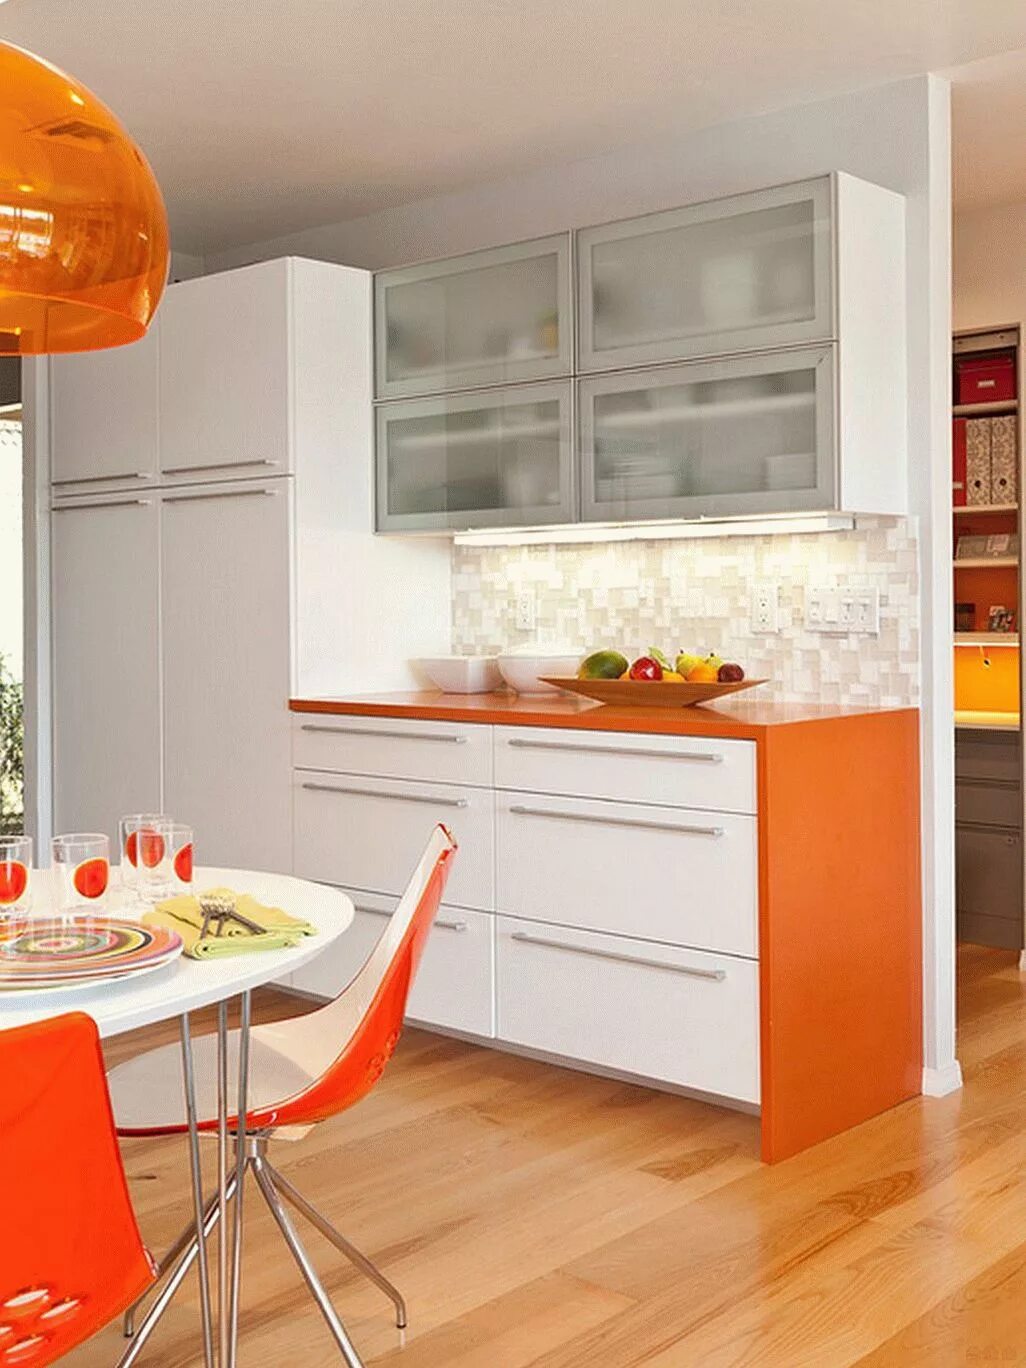 Фруктовая кухня. Кухни оранжевого цвета. Оранжевая кухня в интерьере. Оранжевые стены на кухне. Оранжевый цвет в интерьере кухни.